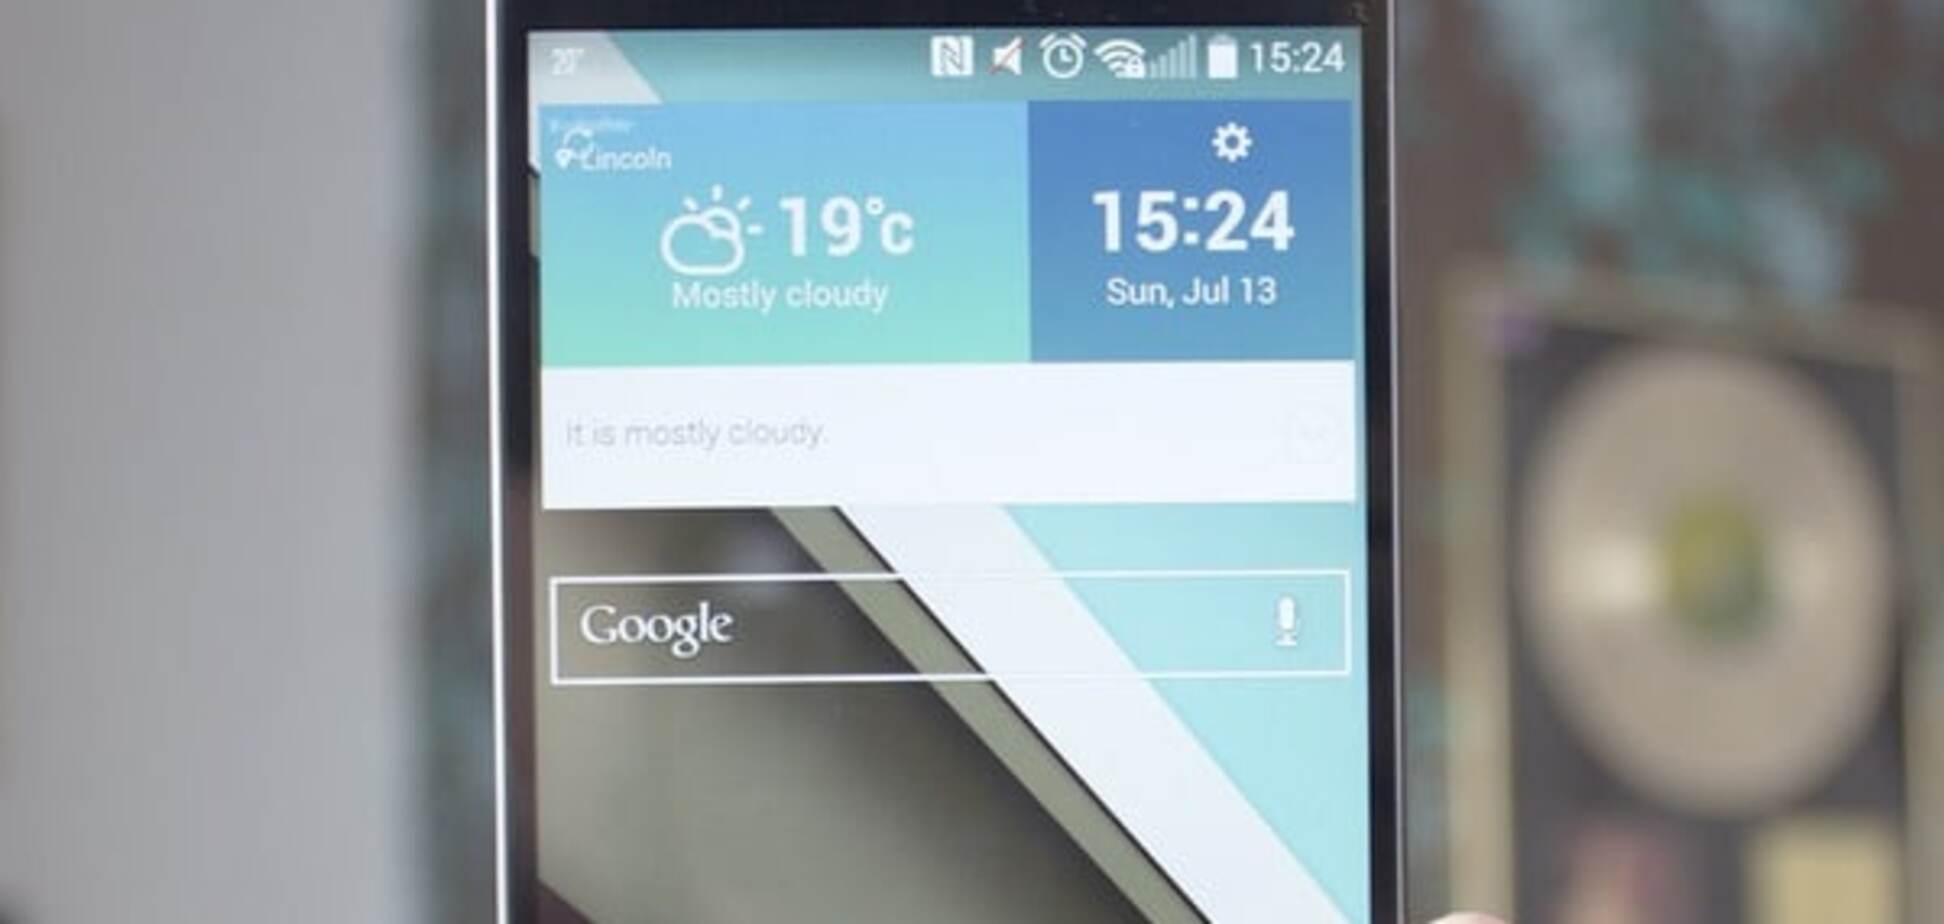 В системе безопасности LG G3 обнаружена прореха. Пользовательские данные в опасности